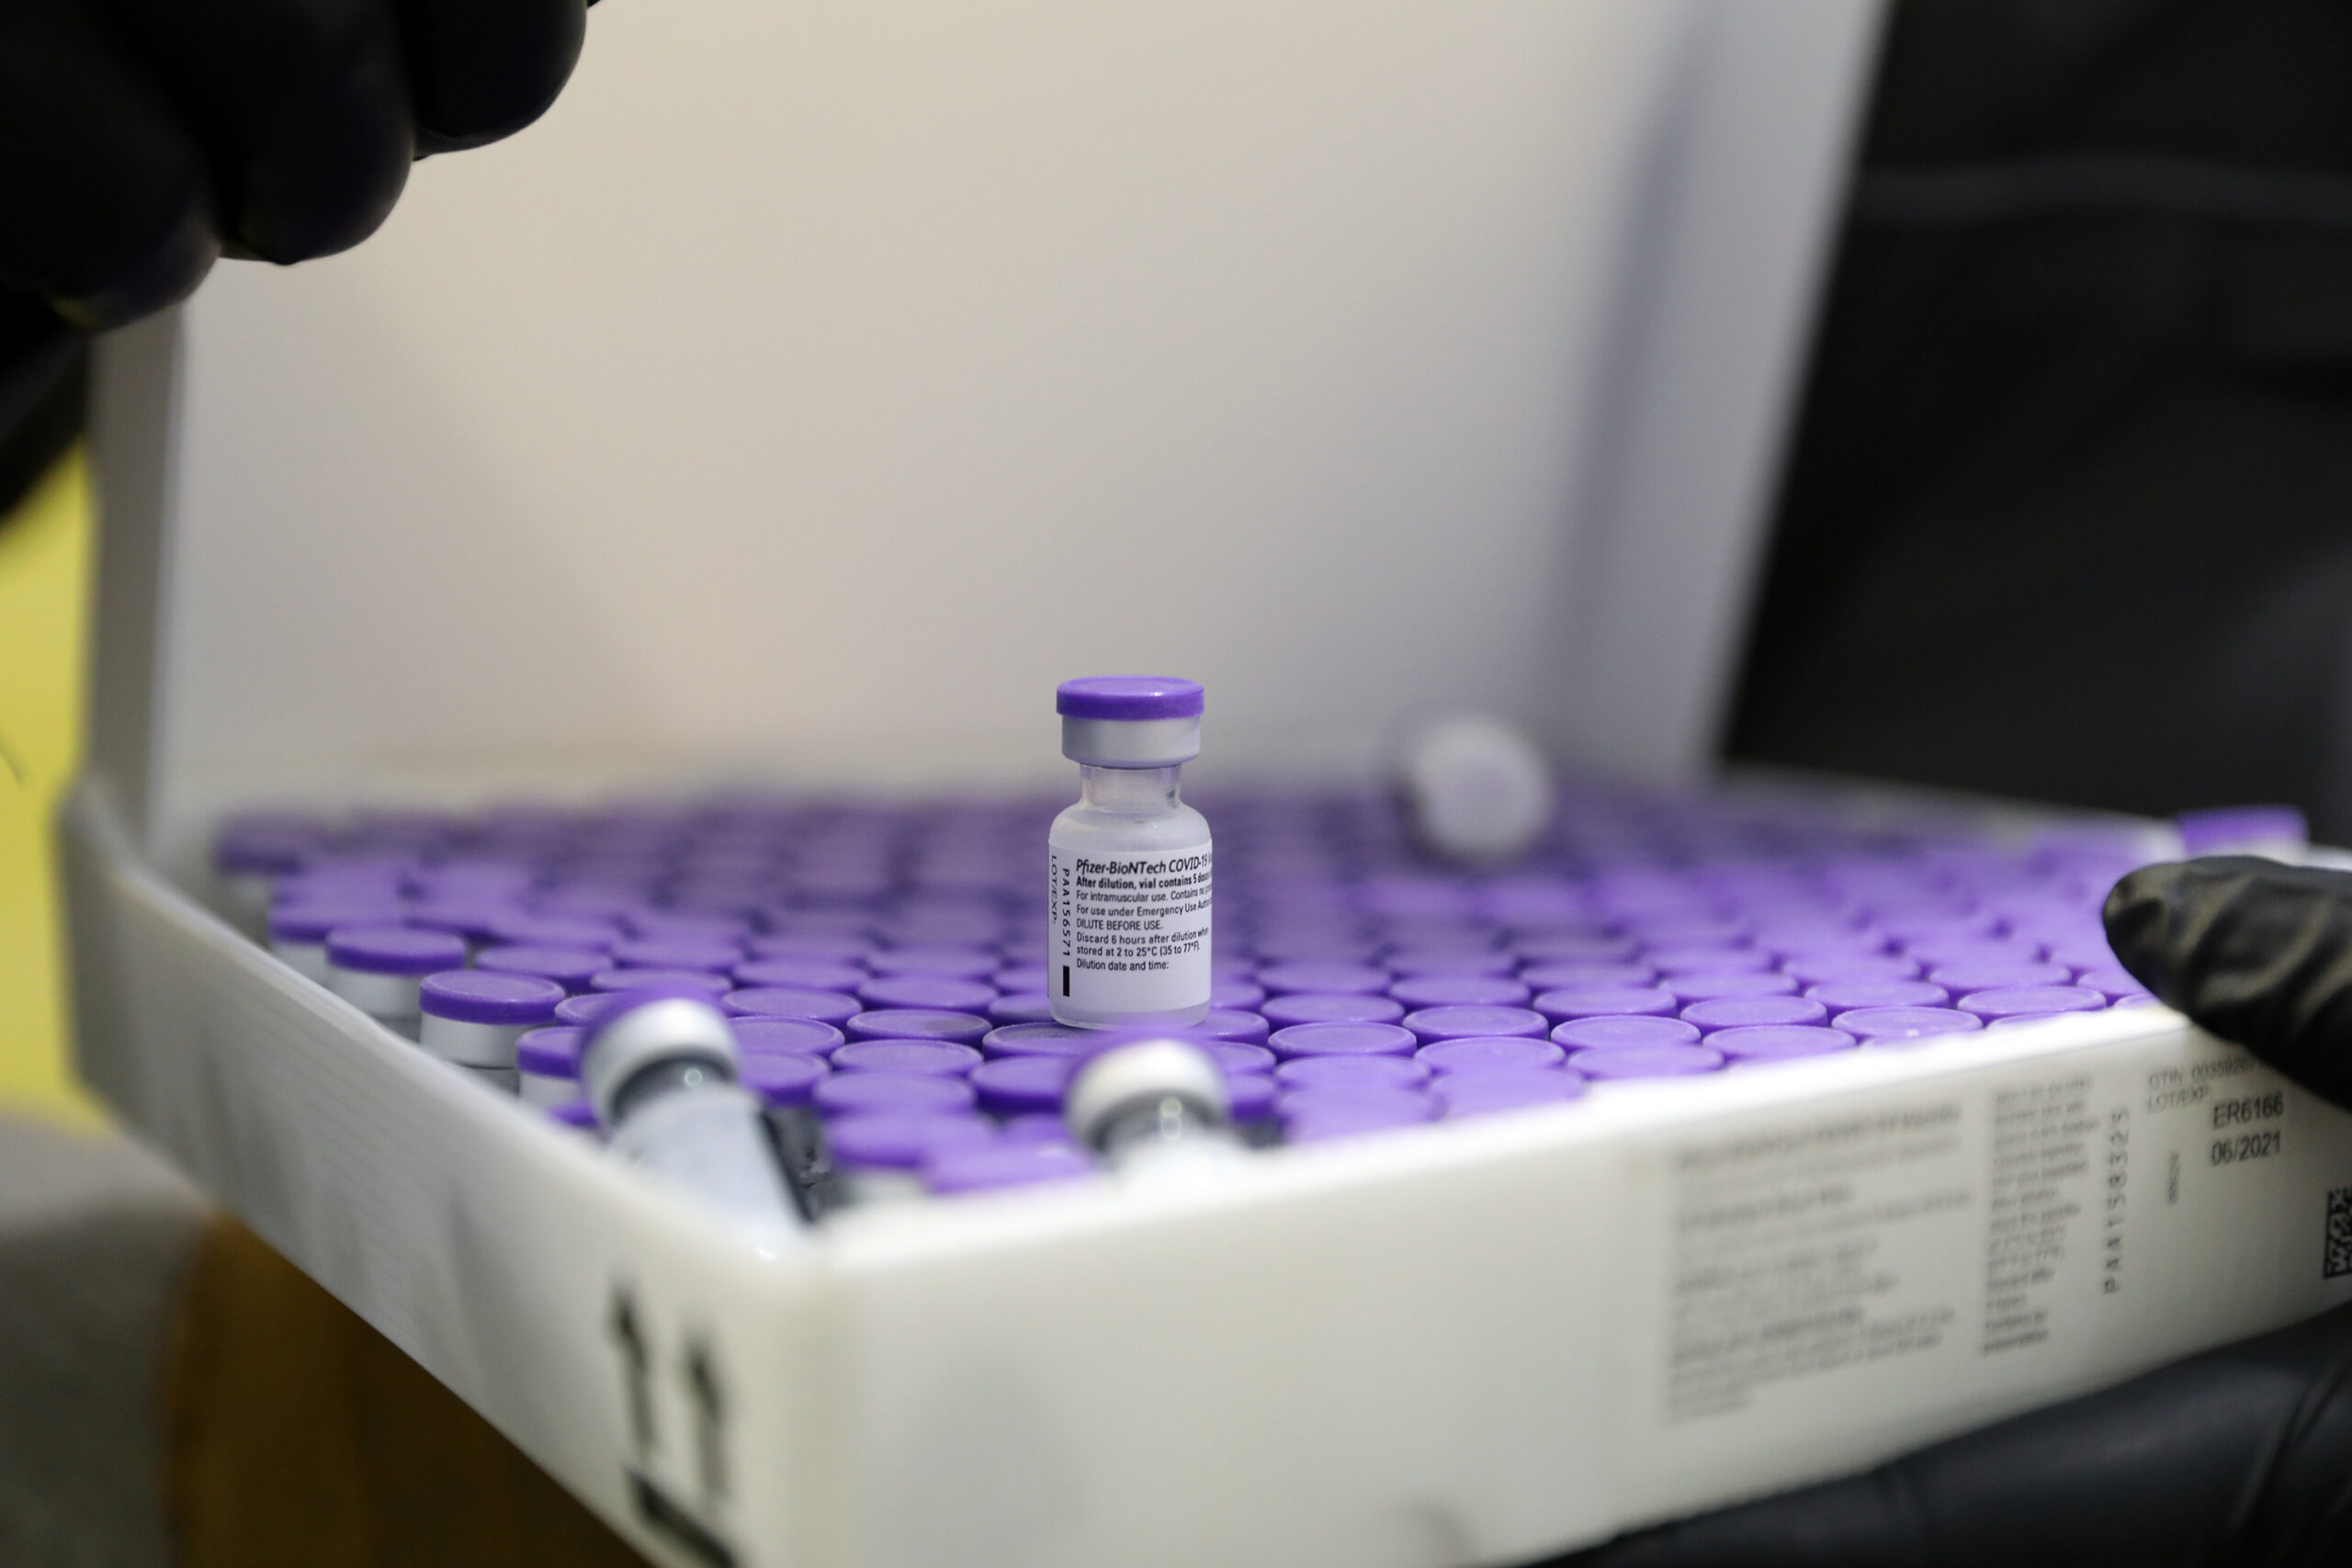 เดนมาร์กชี้วัคซีนโควิด-19 'เอ็มอาร์เอ็นเอ' ปลอดภัยสำหรับเด็ก